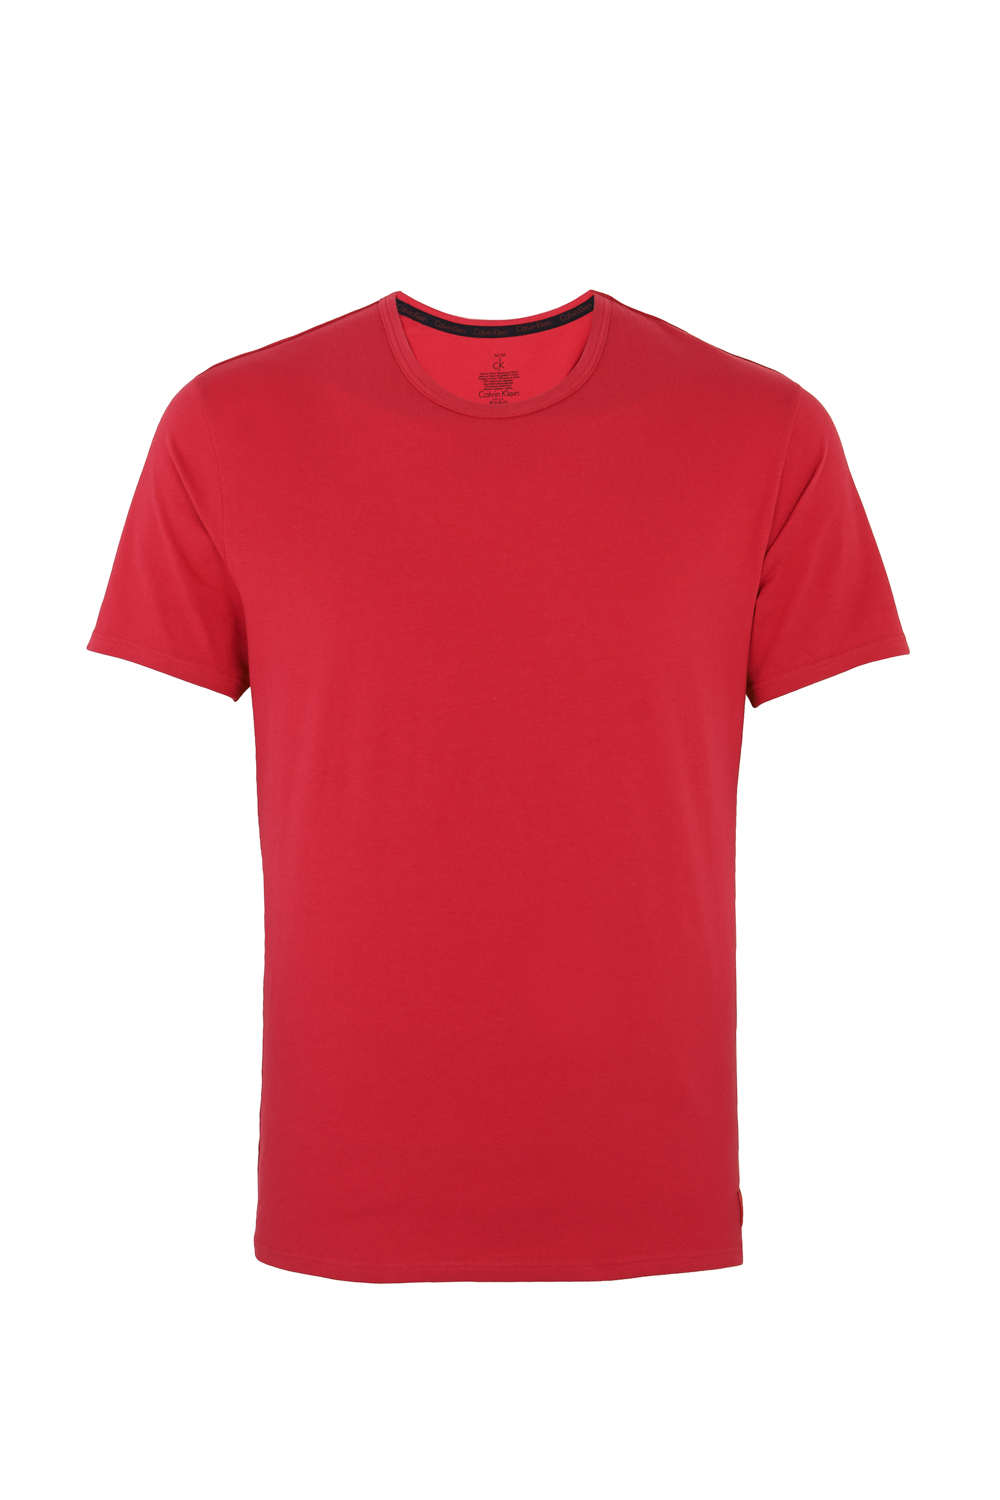 Calvin Klein Cotton Crew Neck T-Shirt Red